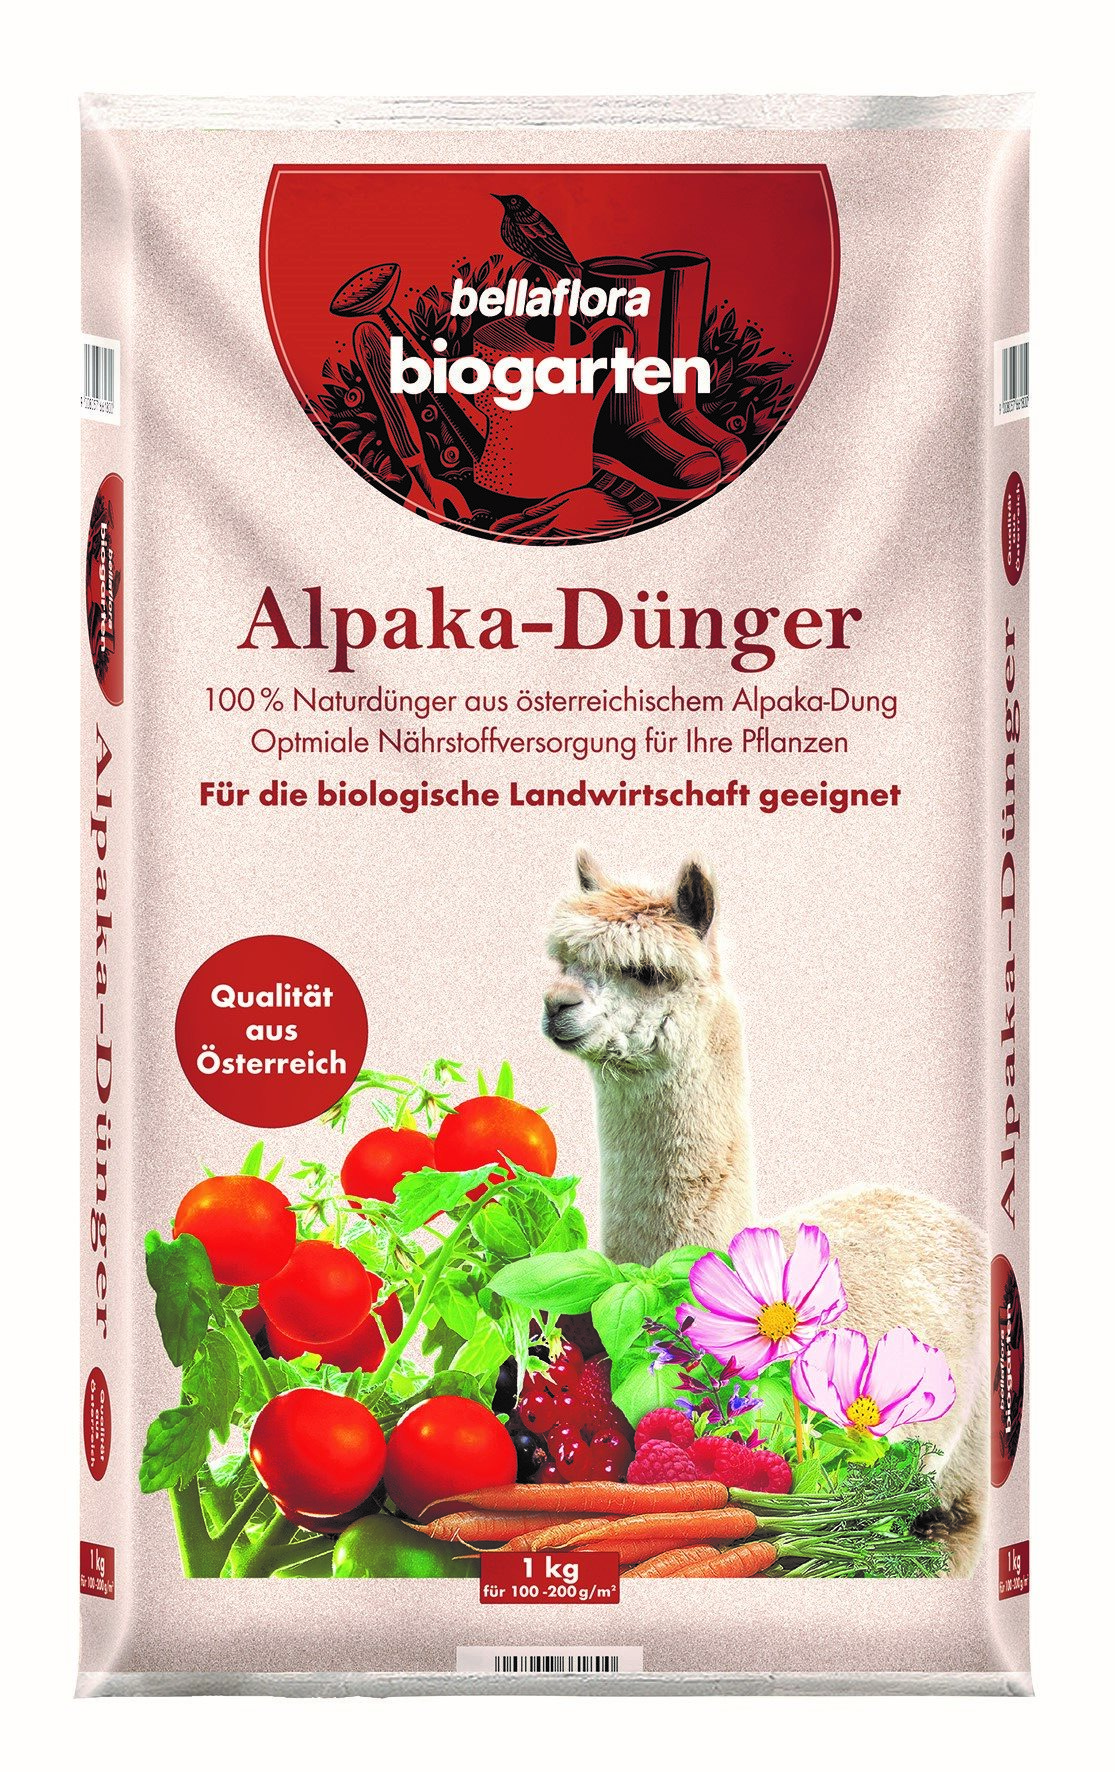 Alpaka-Dünger von bellaflora biogarten